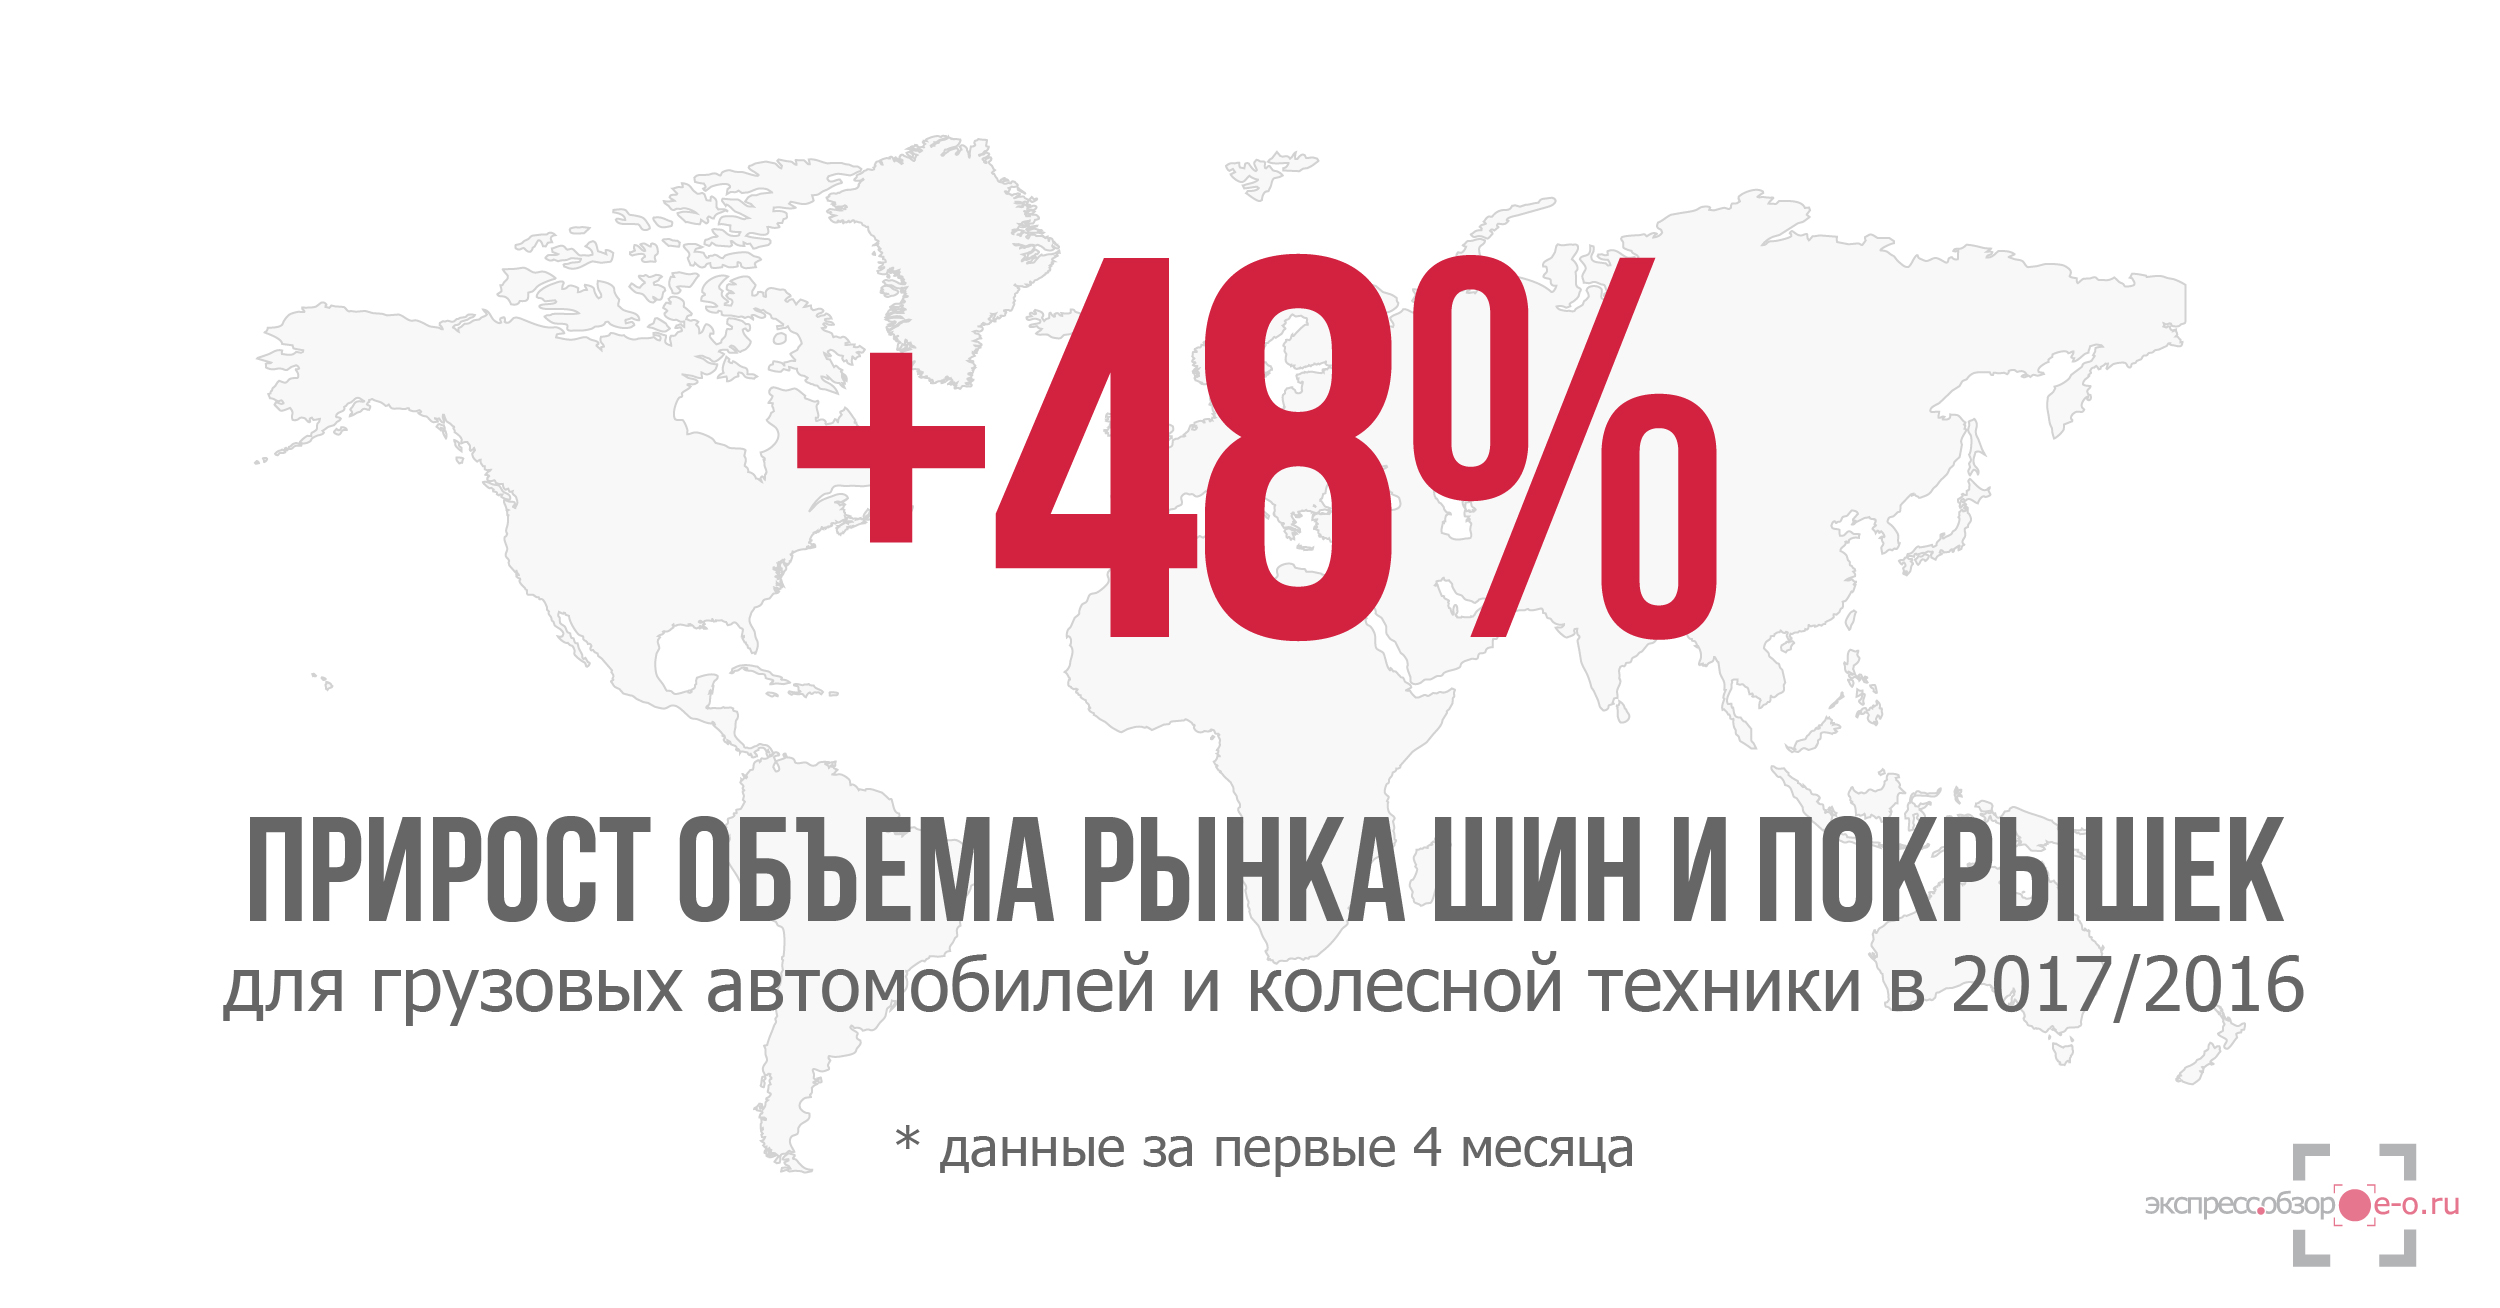 Рынок шин и покрышек в России